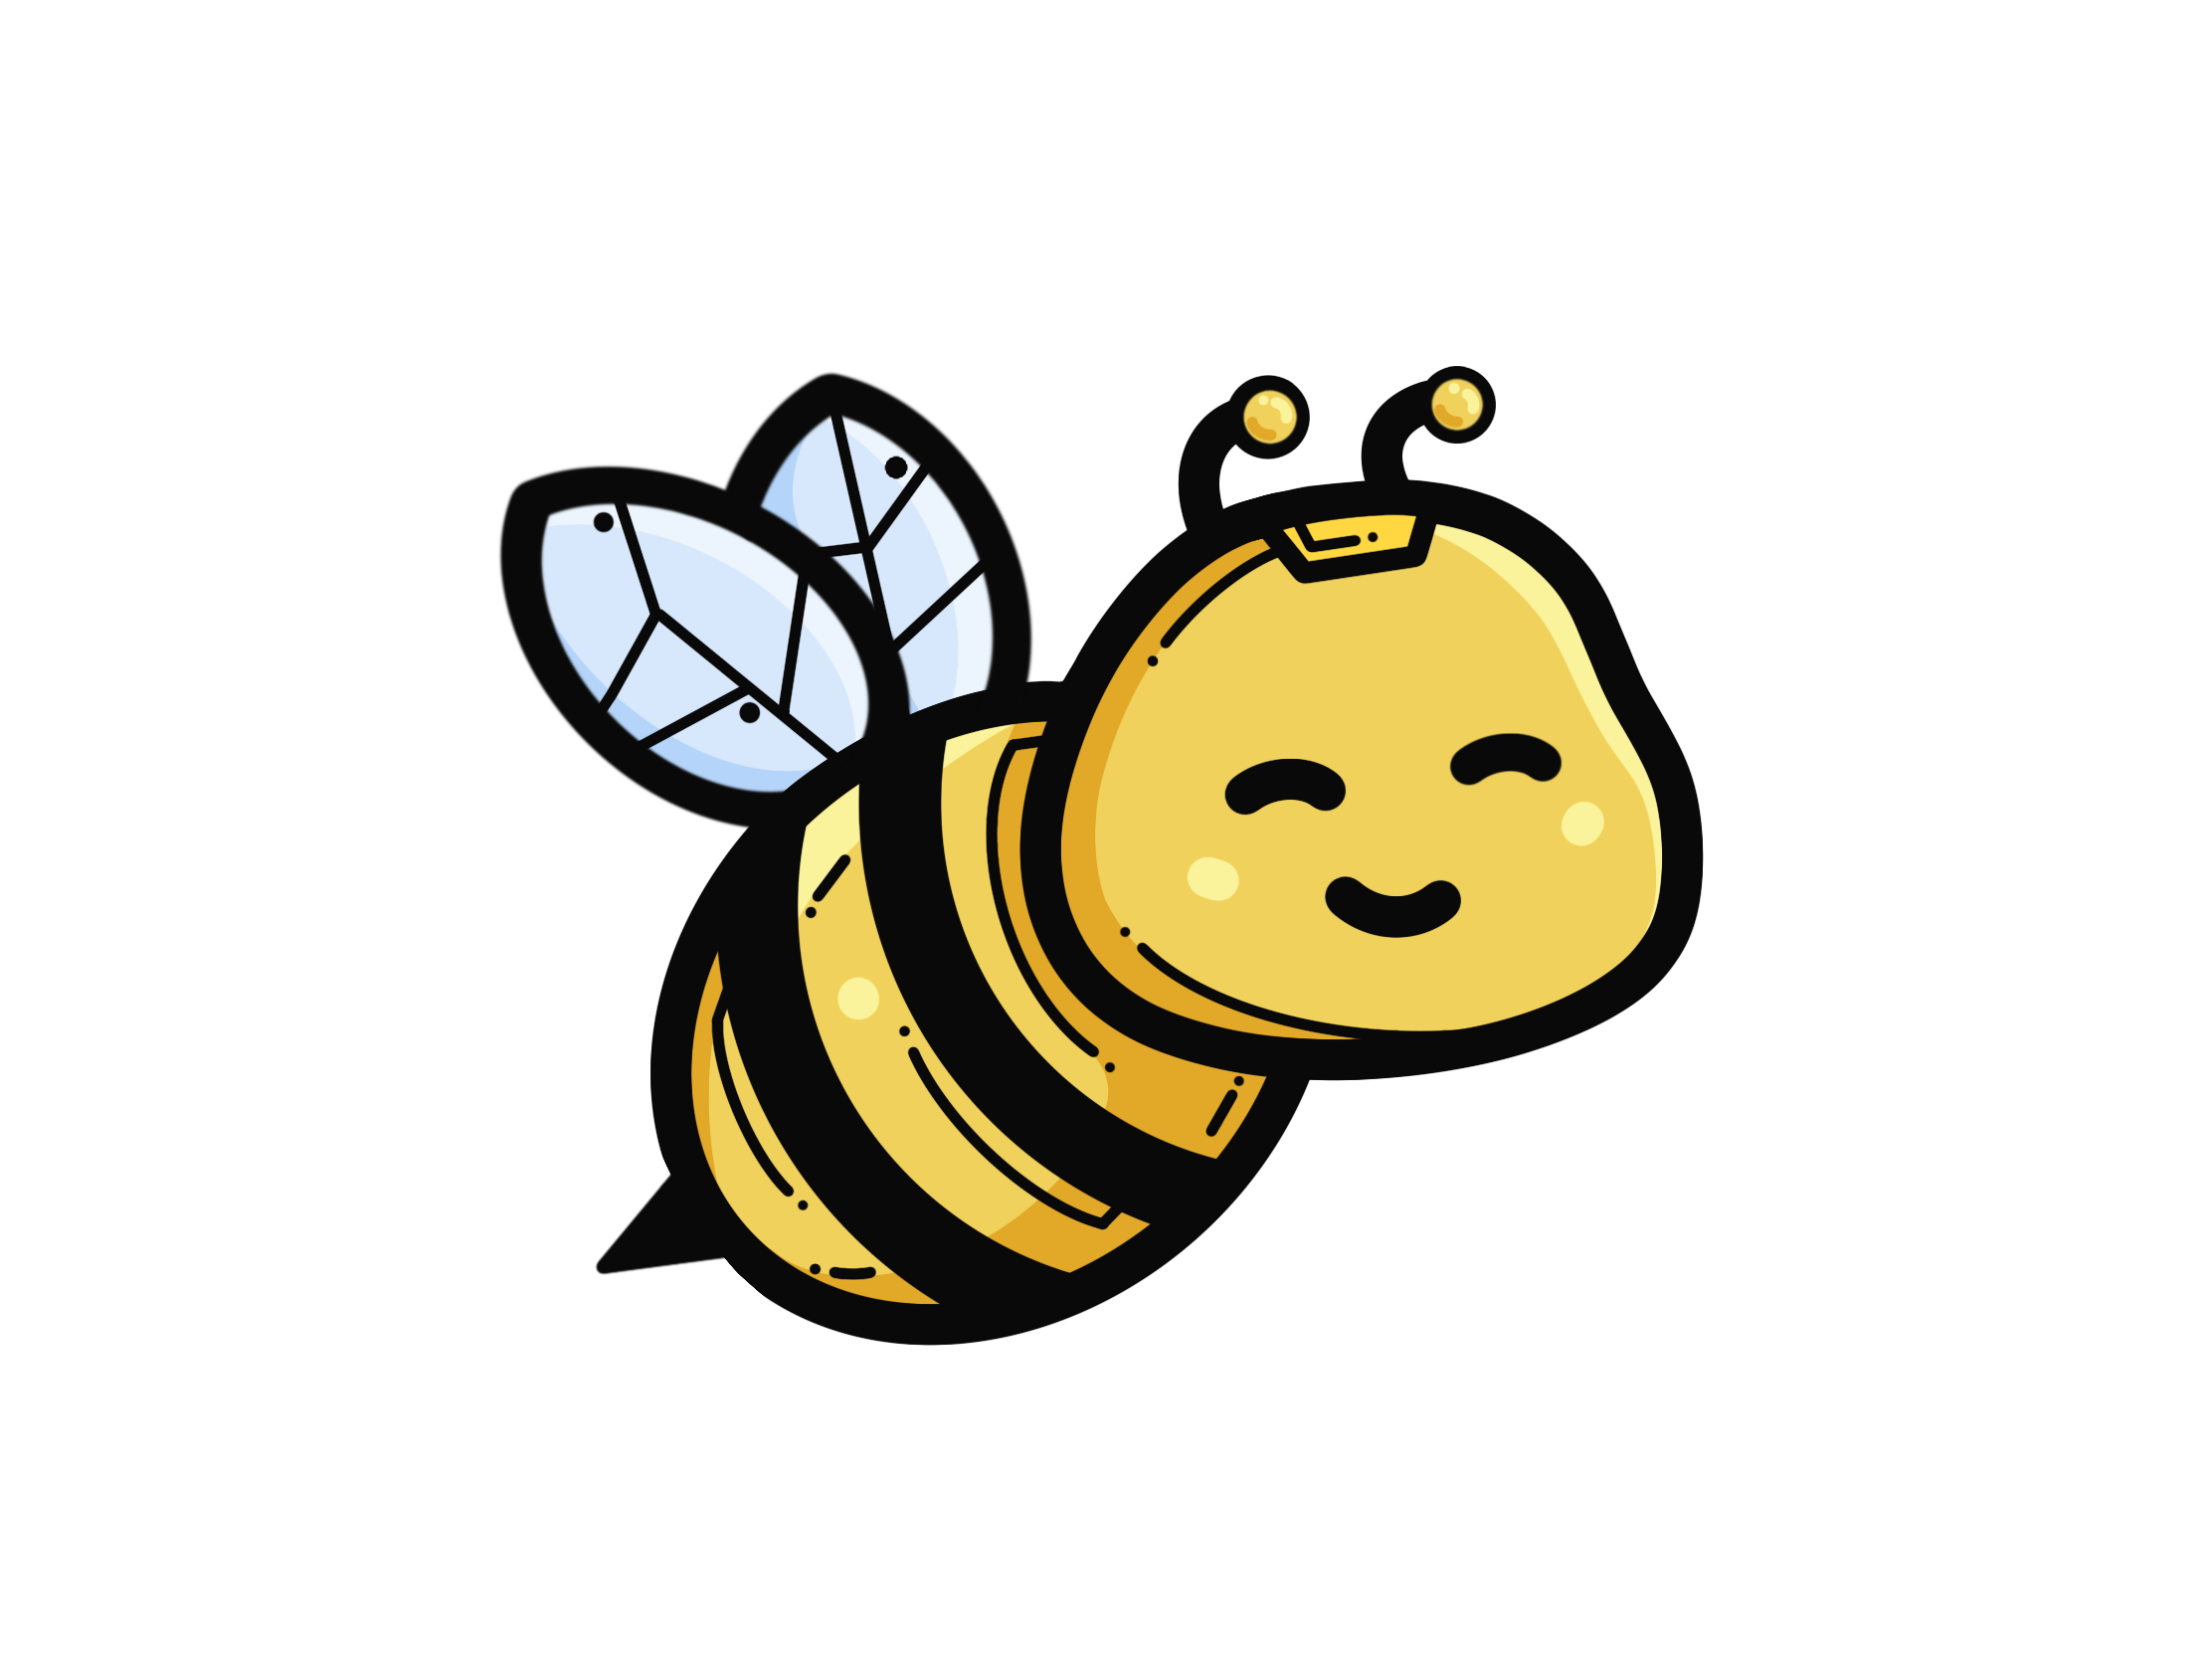 Bee happy